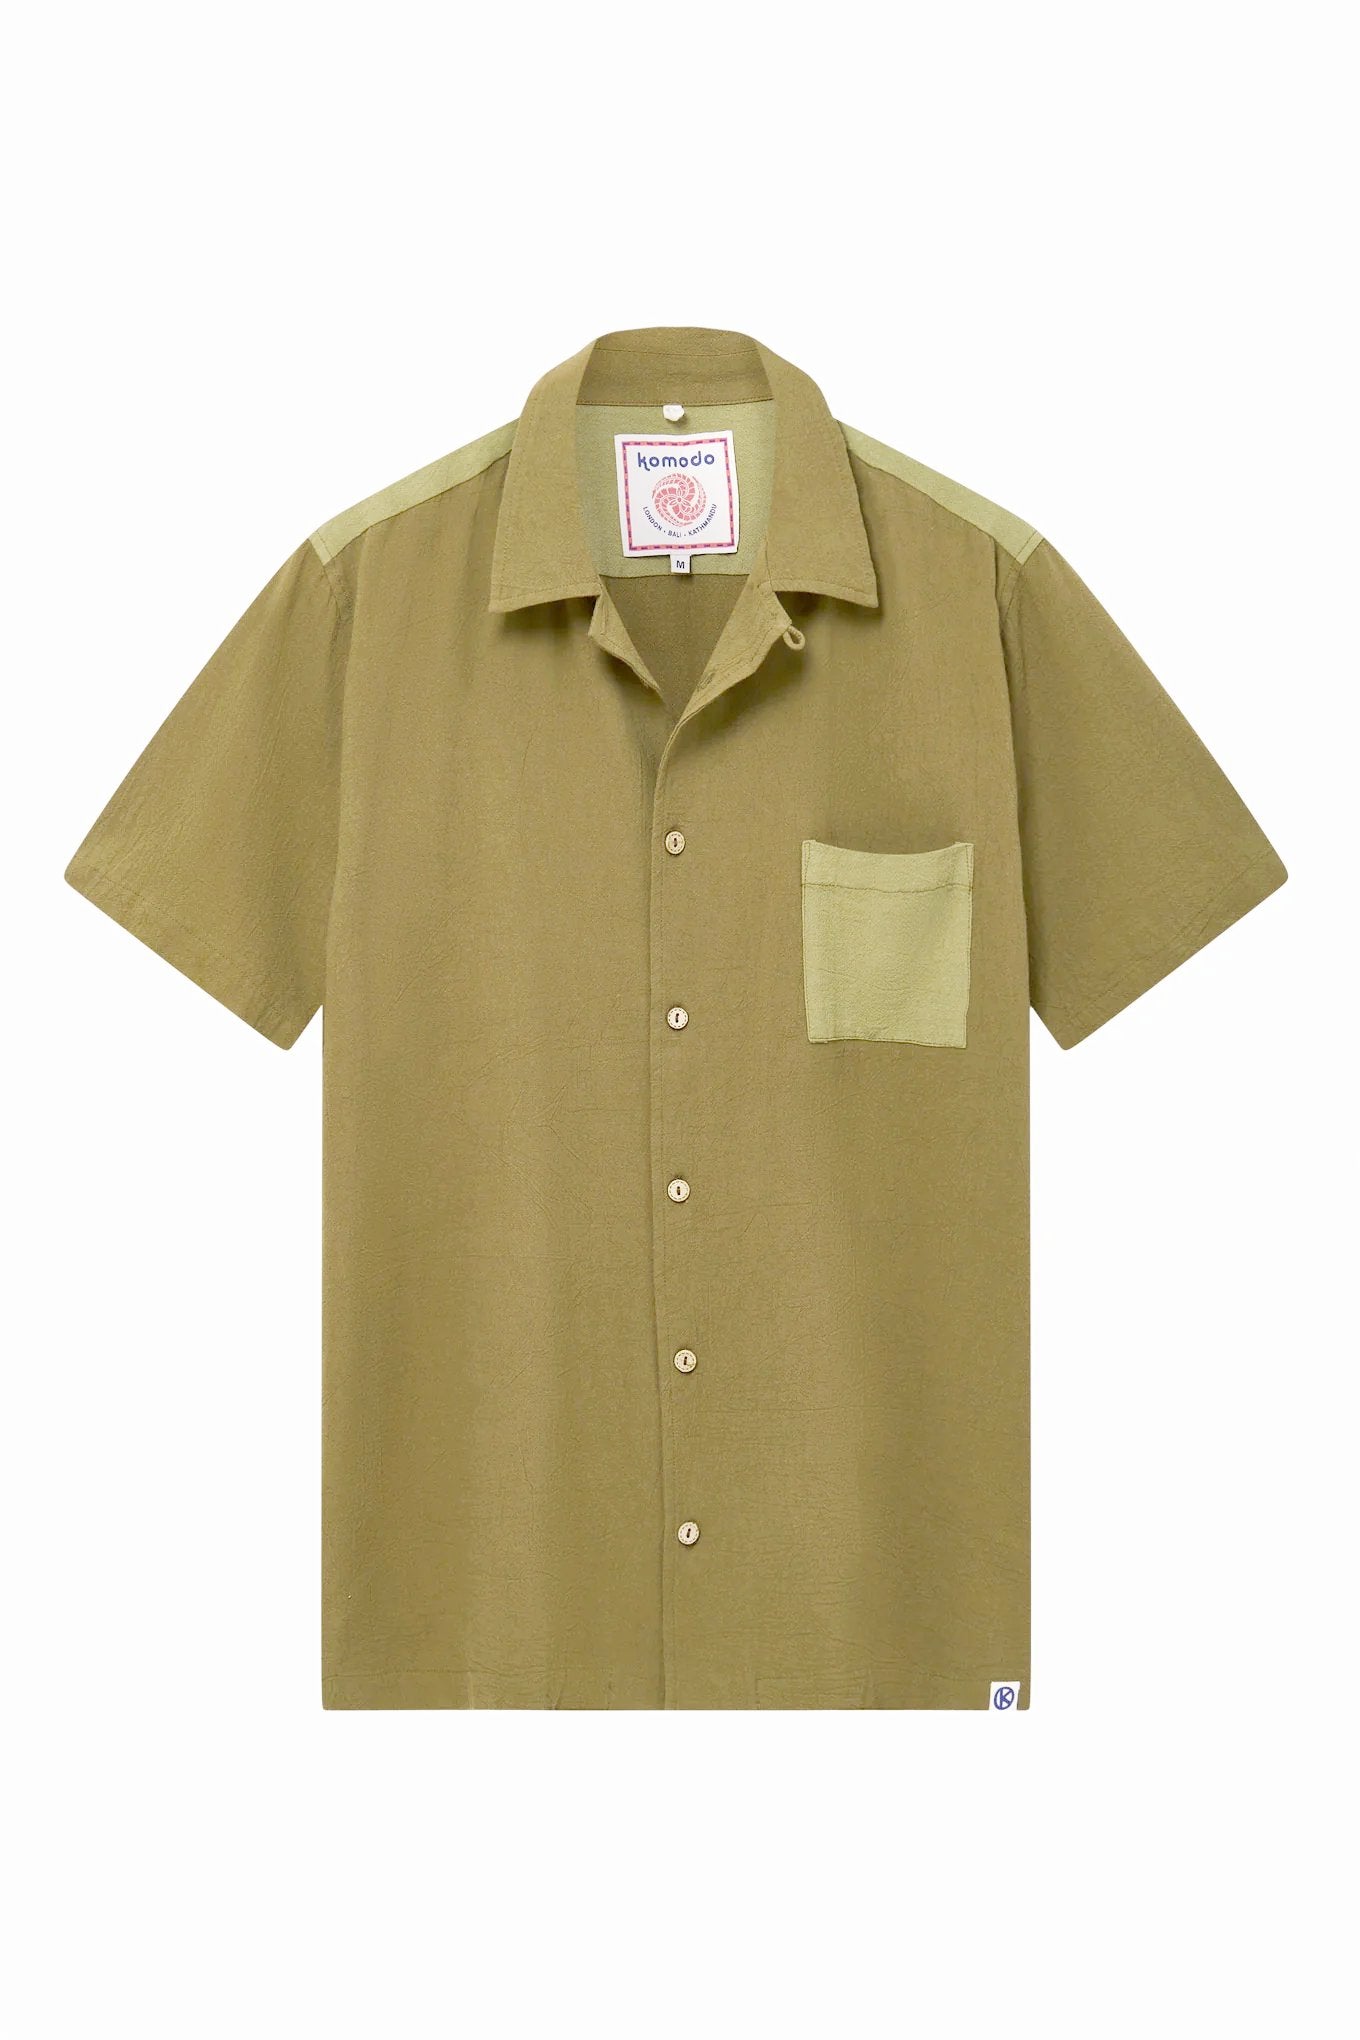 SPINDRIFT - Organic Cotton Shirt Green Patchwork